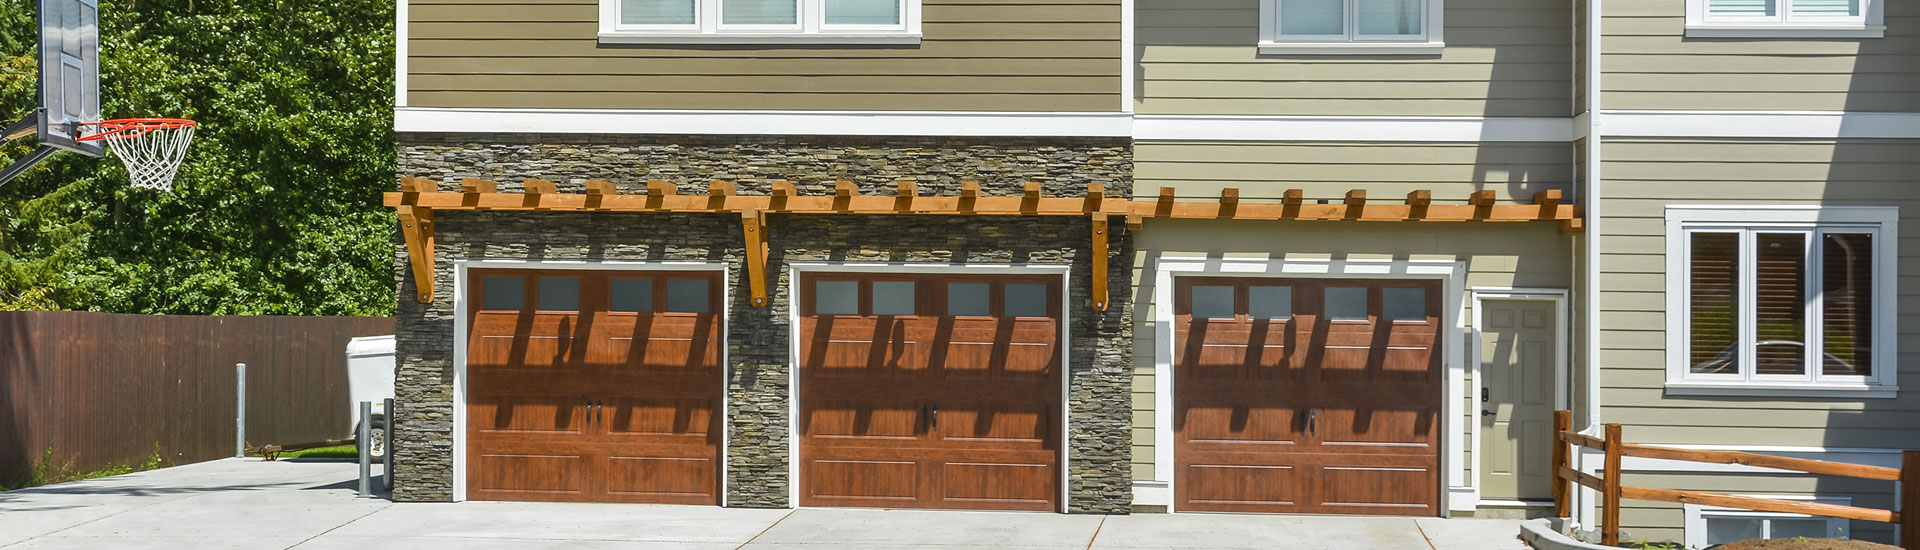 Three Wooden Garage Doors